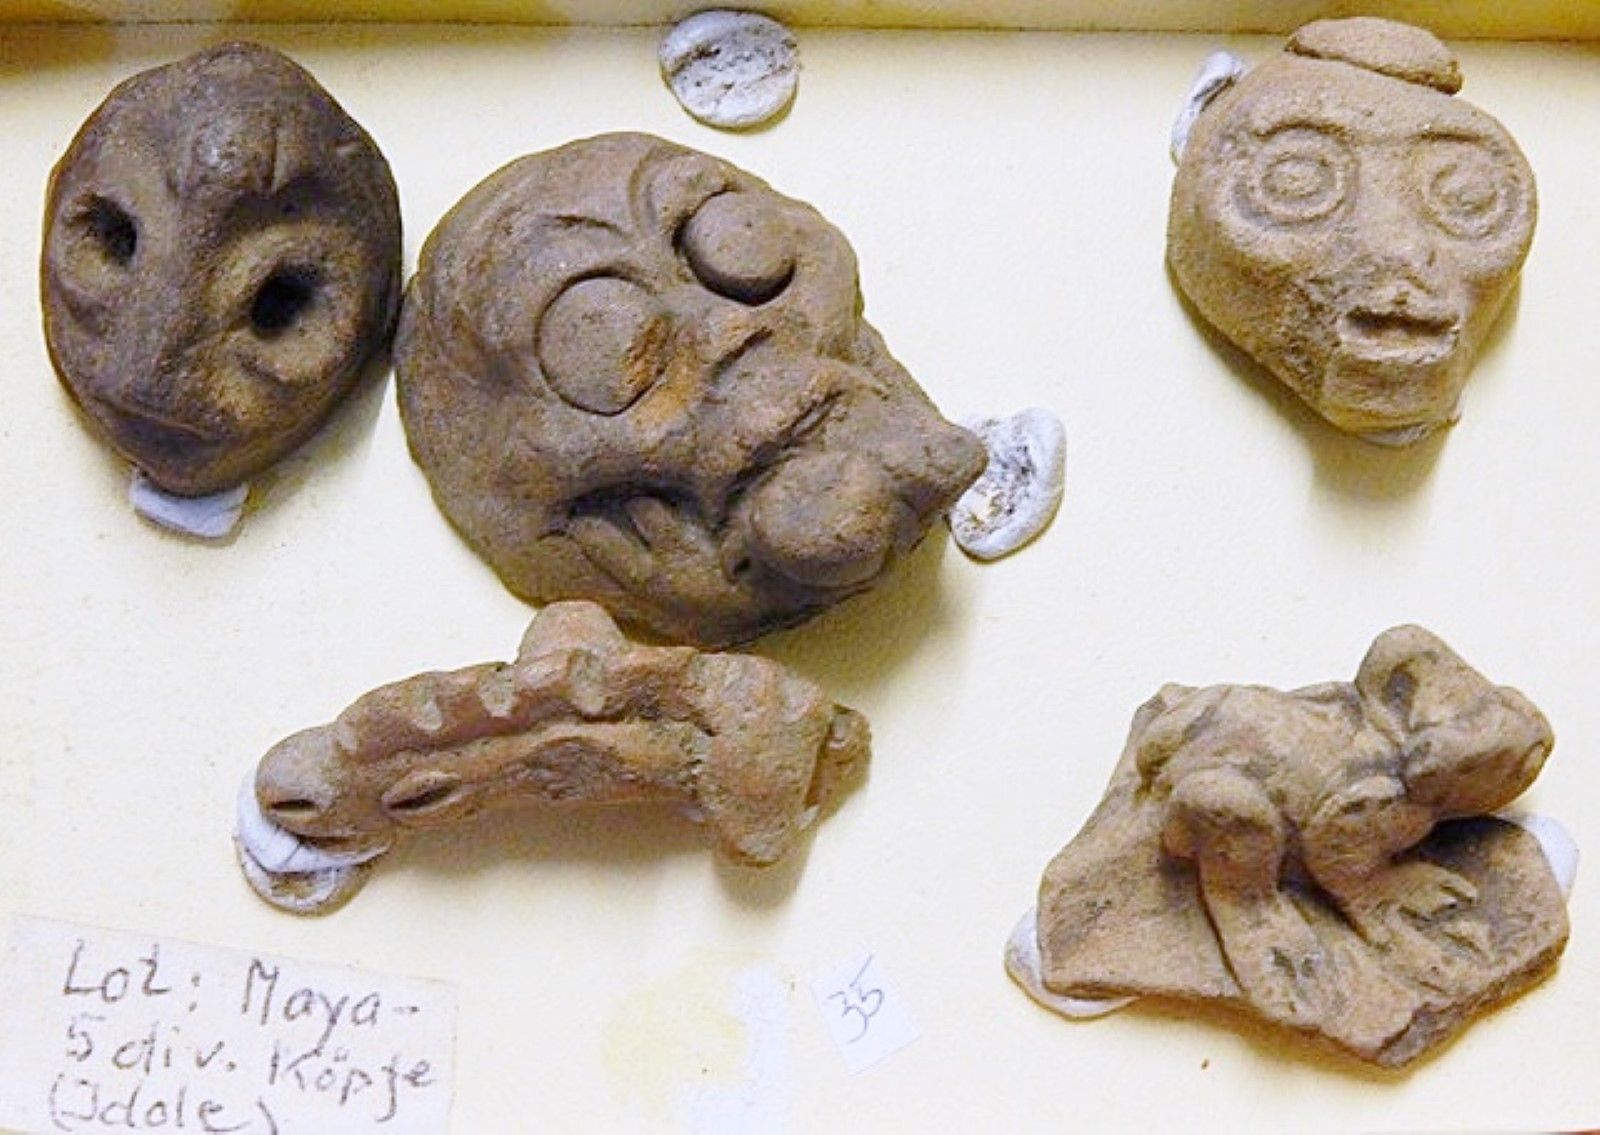 Null De la cultura maya: 5 trozos de varias cabezas (ídolos), juntos